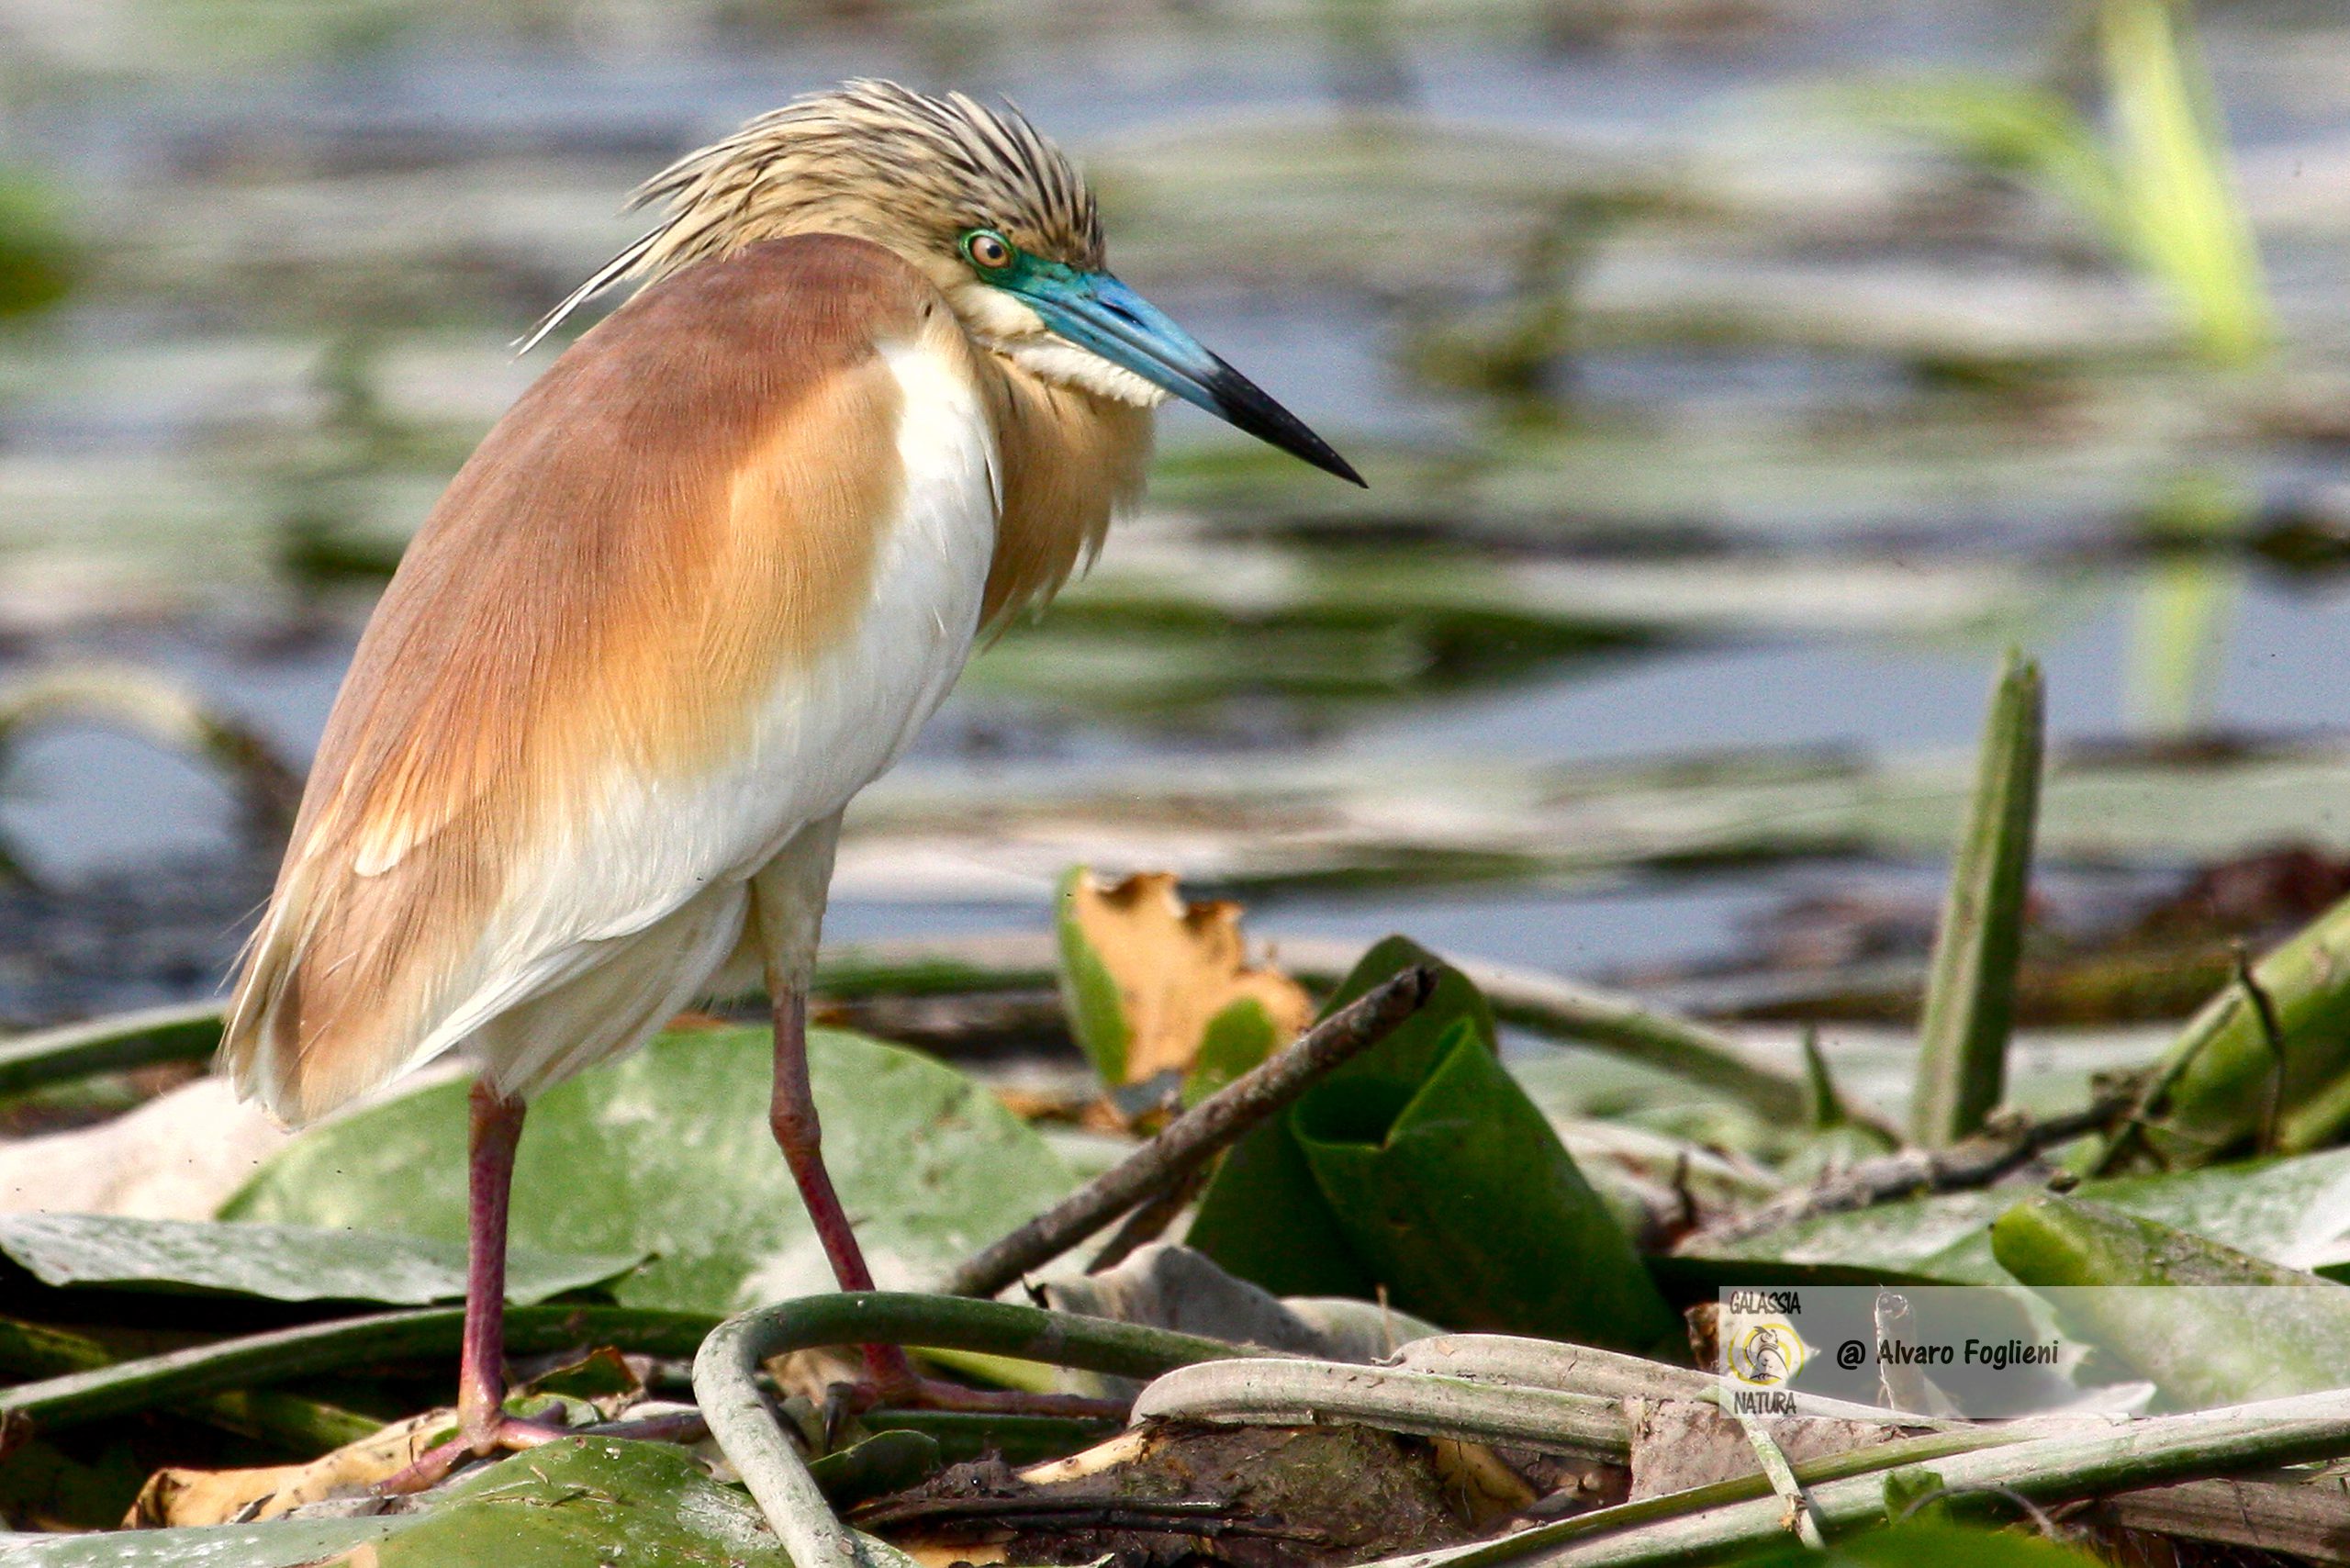 Sguardo diretto vs distolto: vantaggi e significati nelle fotografie di uccelli selvatici.